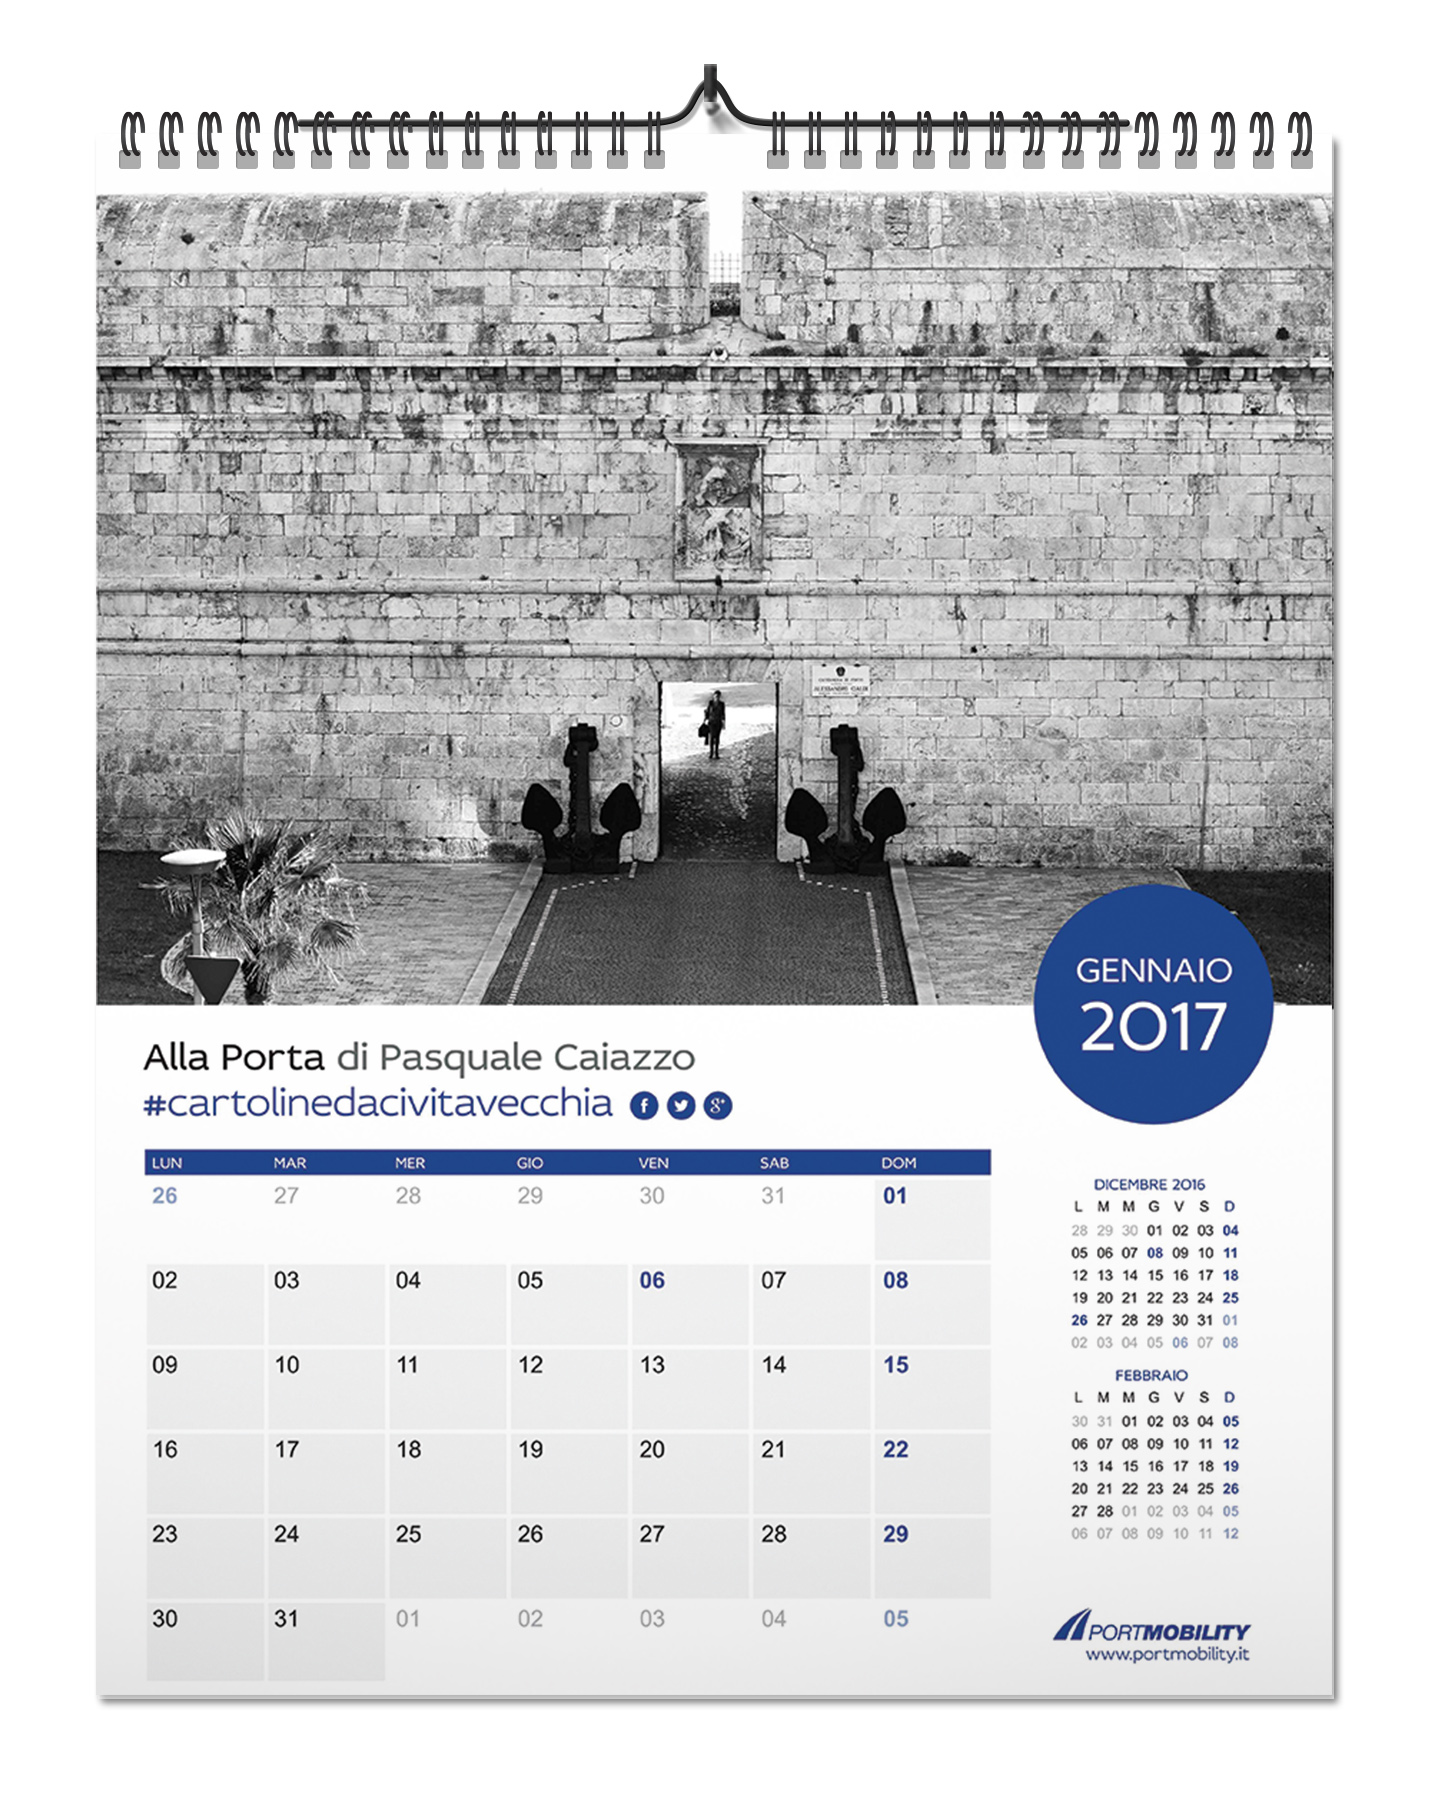 El mes de Enero del Calendario 2017